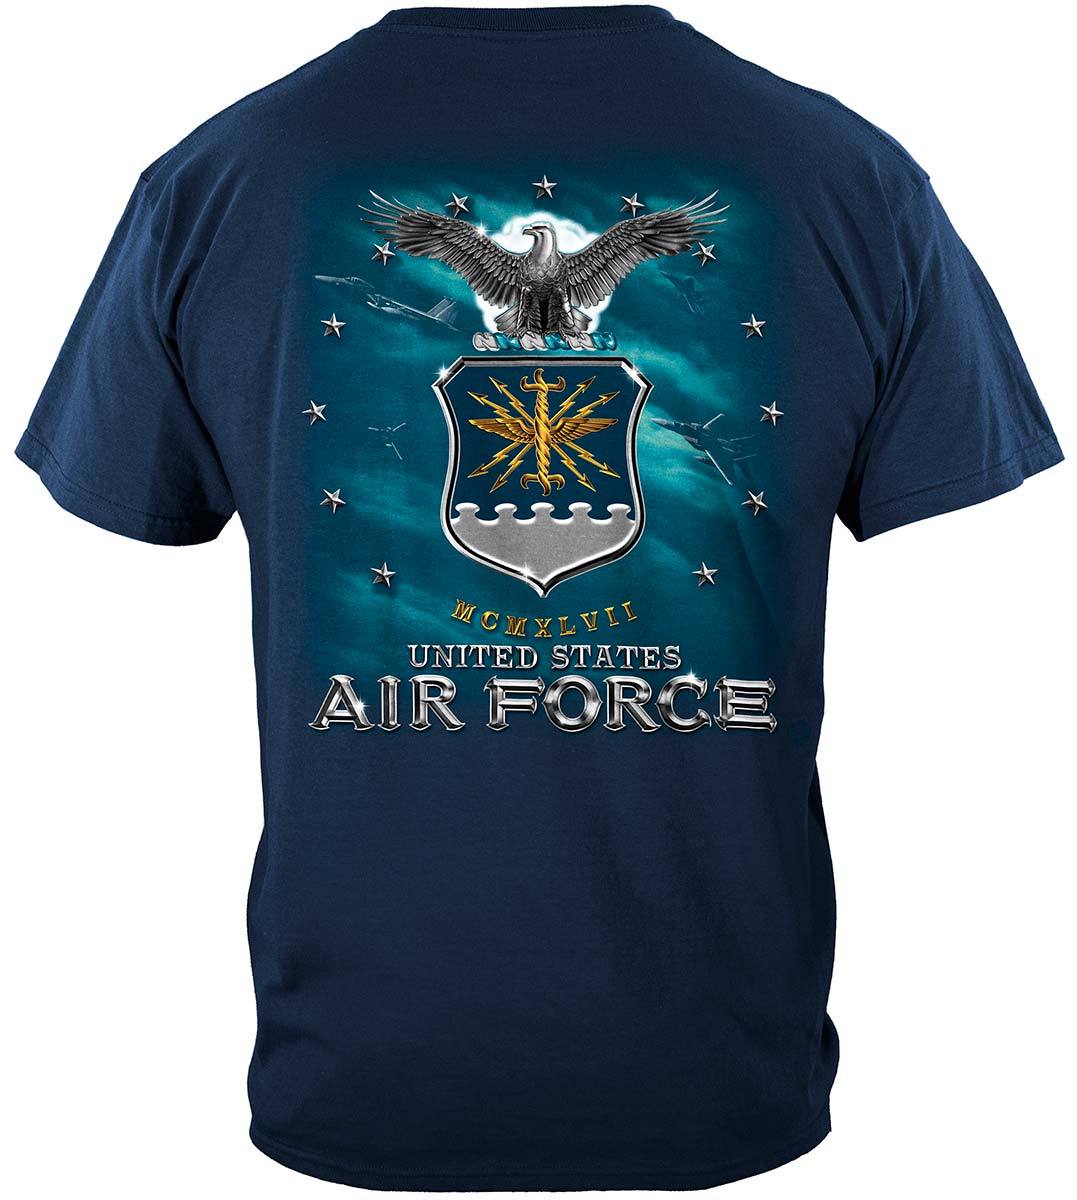 Air Force USAF Missile Premium Long Sleeves